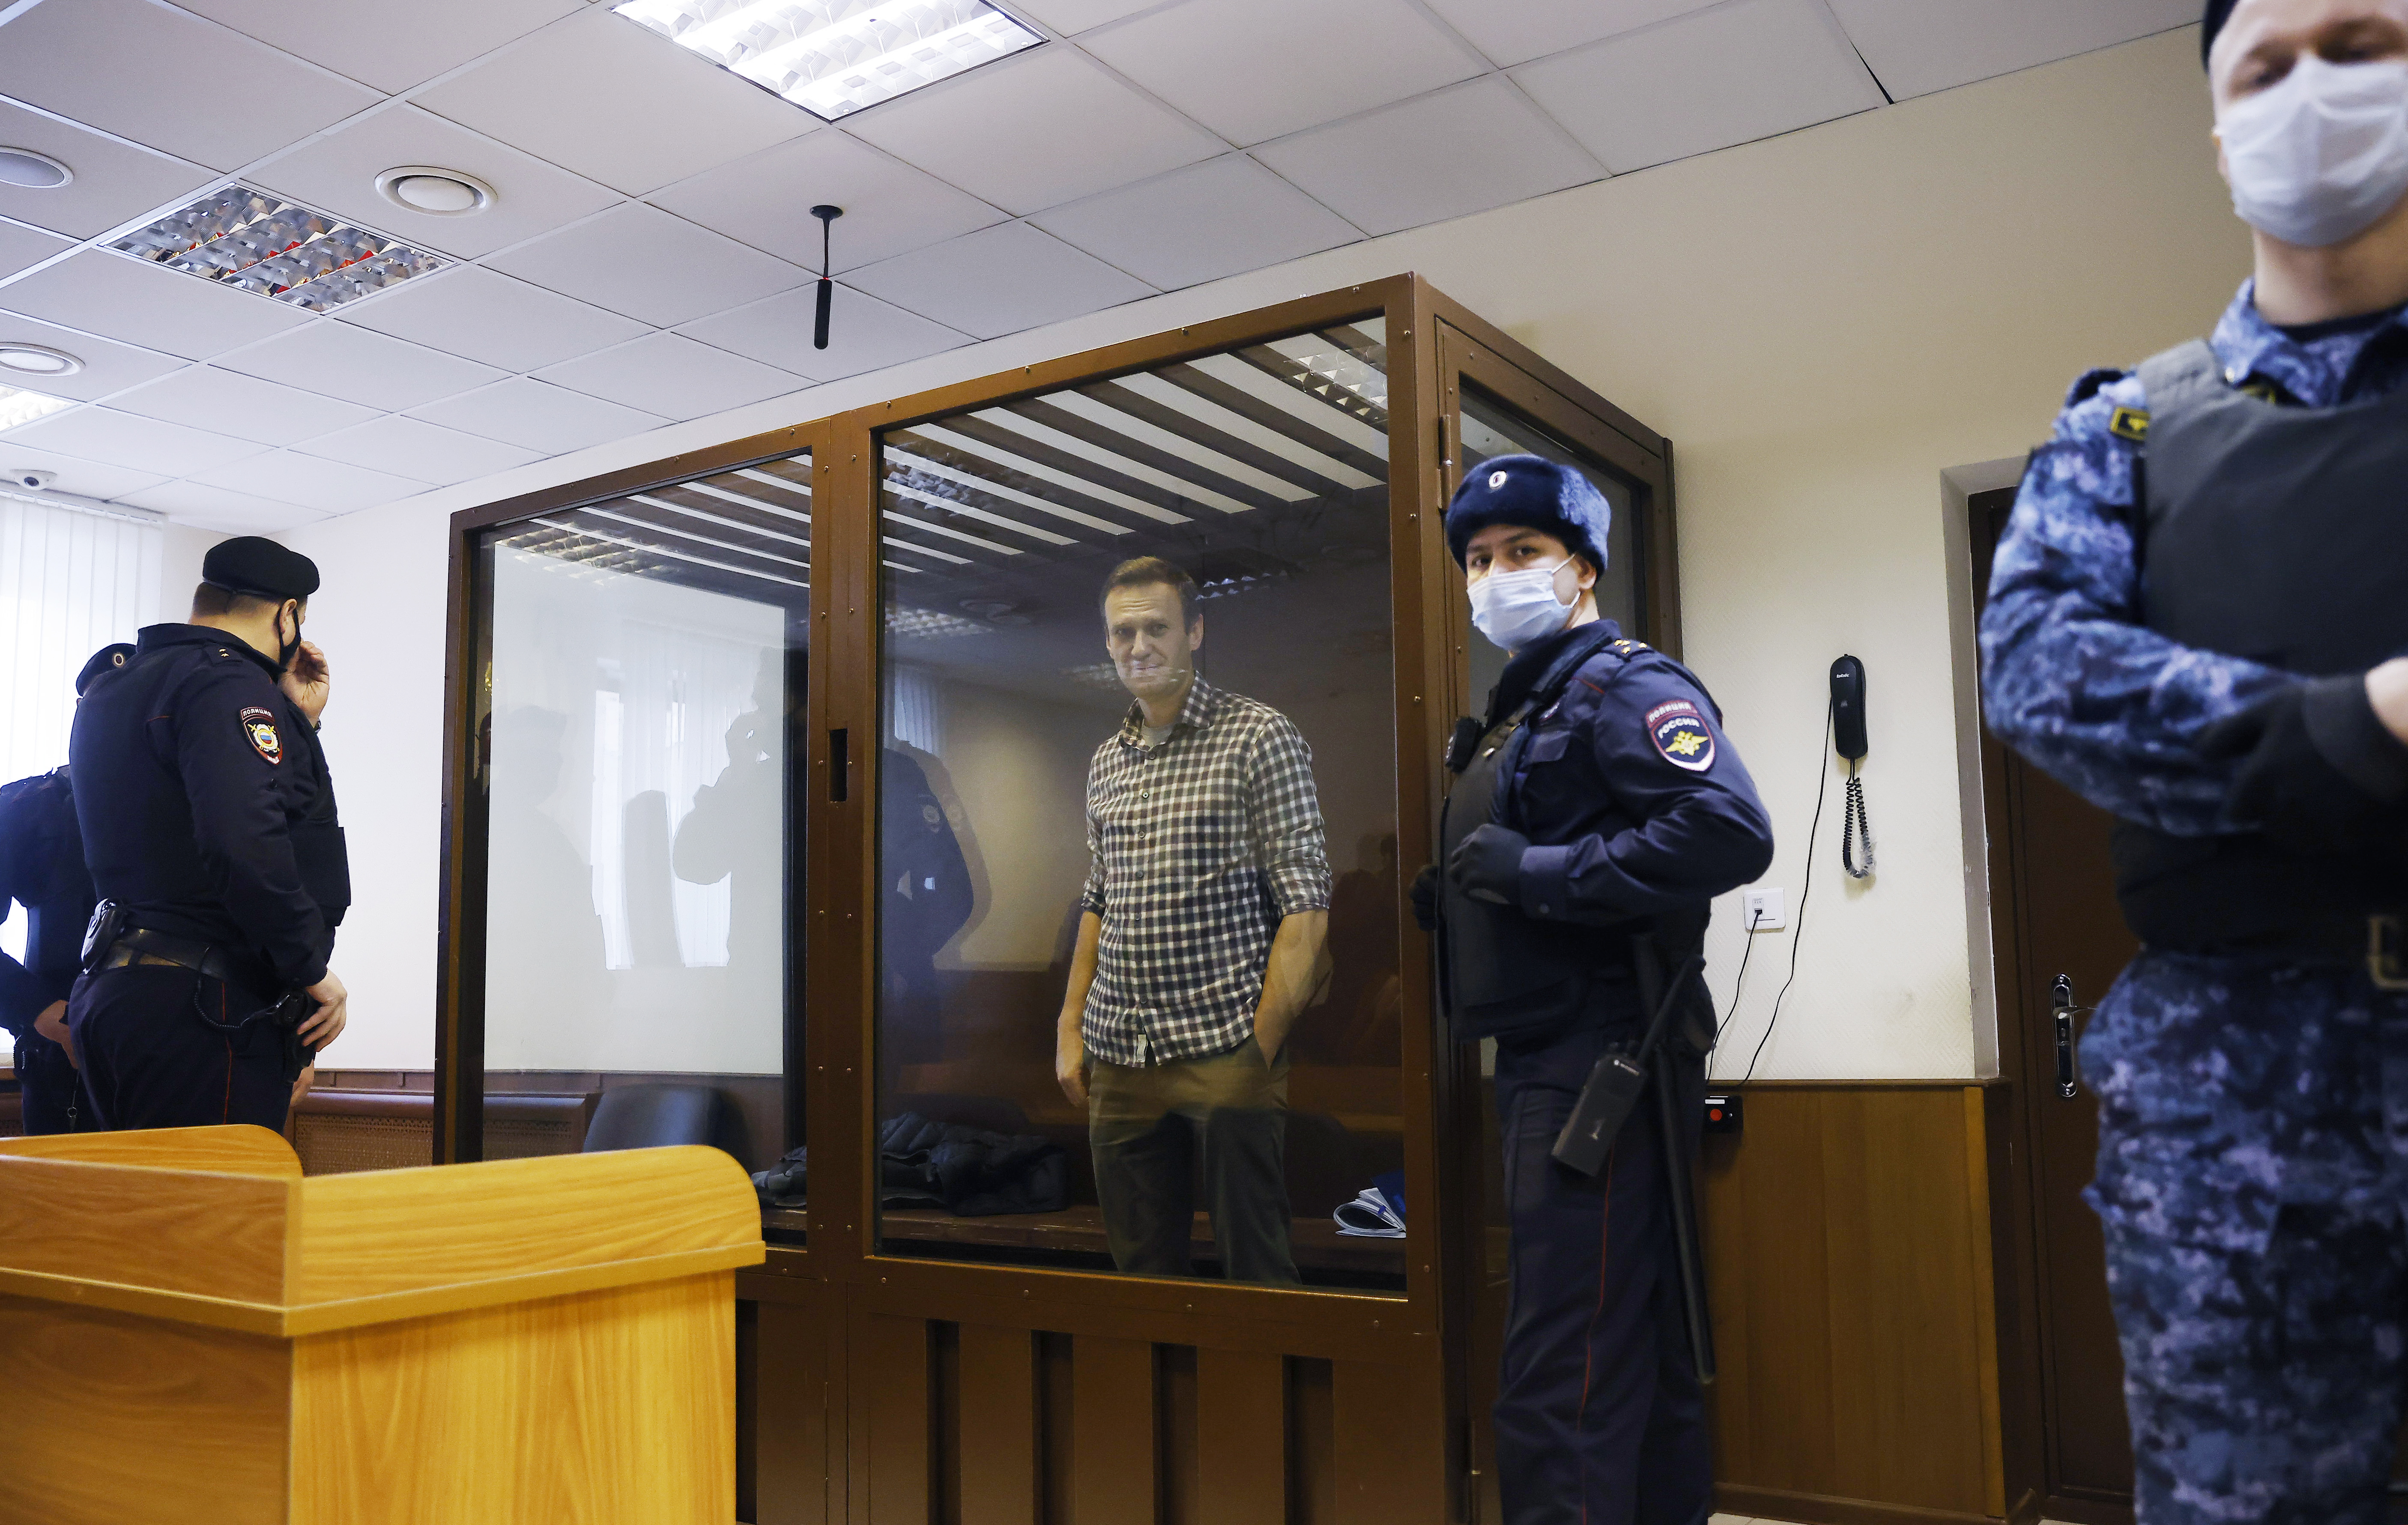 Foto de archivo: El líder de la oposición rusa Alexei Navalny asiste a una audiencia para considerar una apelación en Moscú, Rusia, el 20 de febrero de 2021. REUTERS/Maxim Shemetov